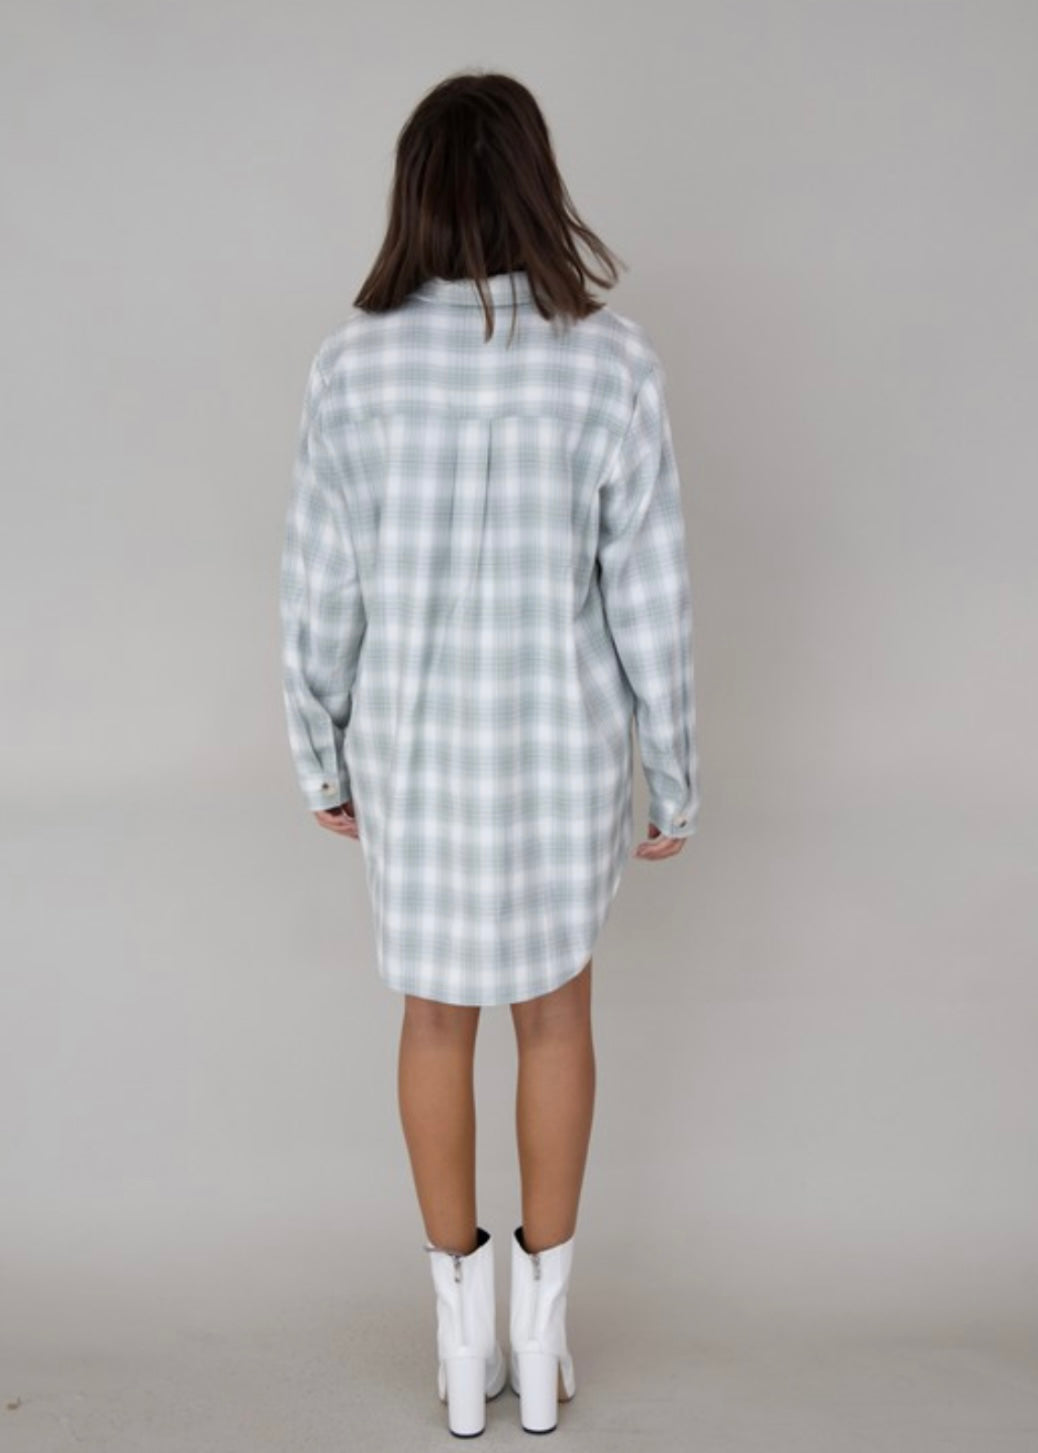 “Bristol” checkered shirt dress